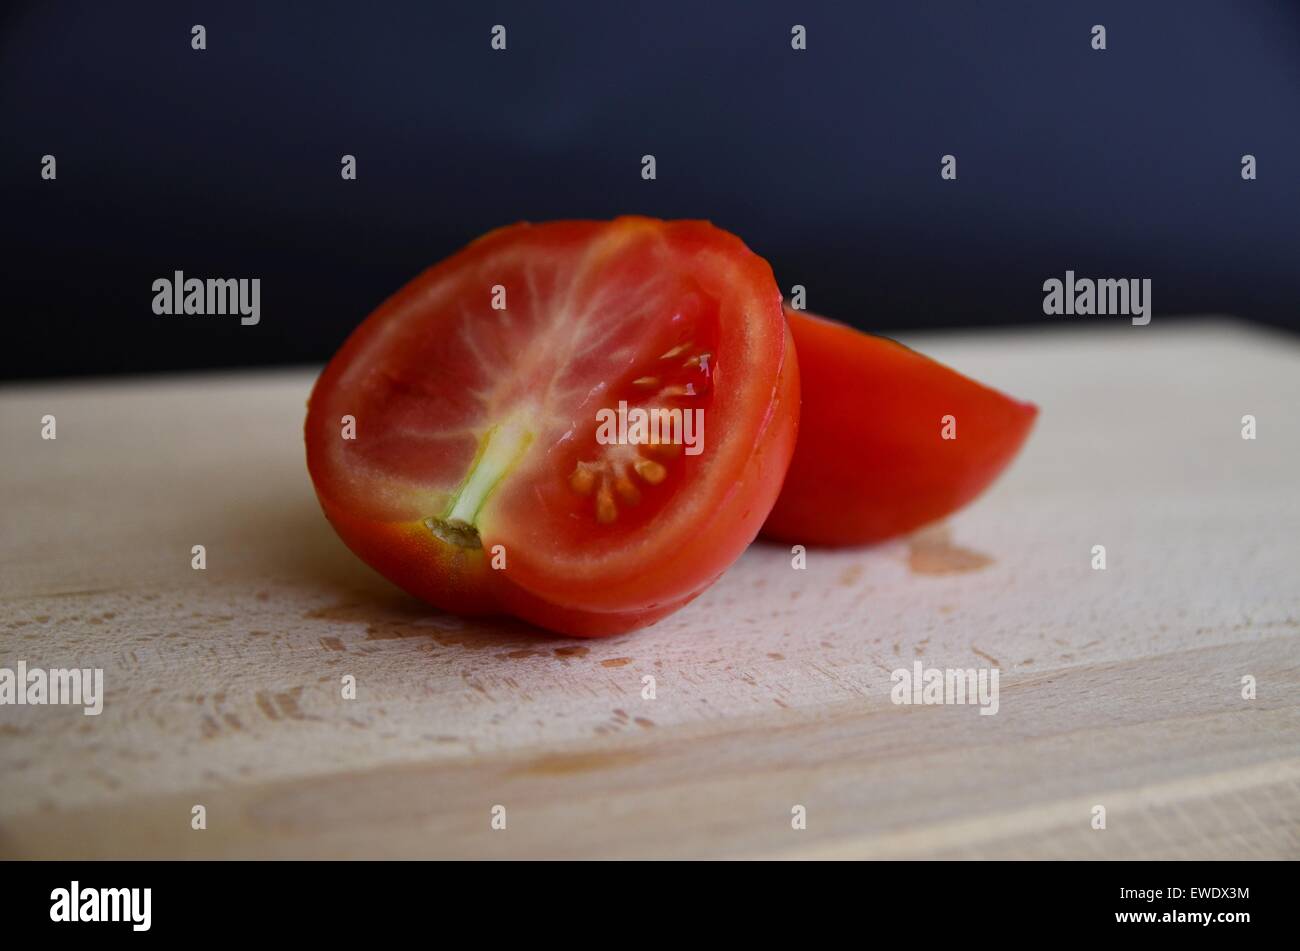 Two halves of tomato Stock Photo